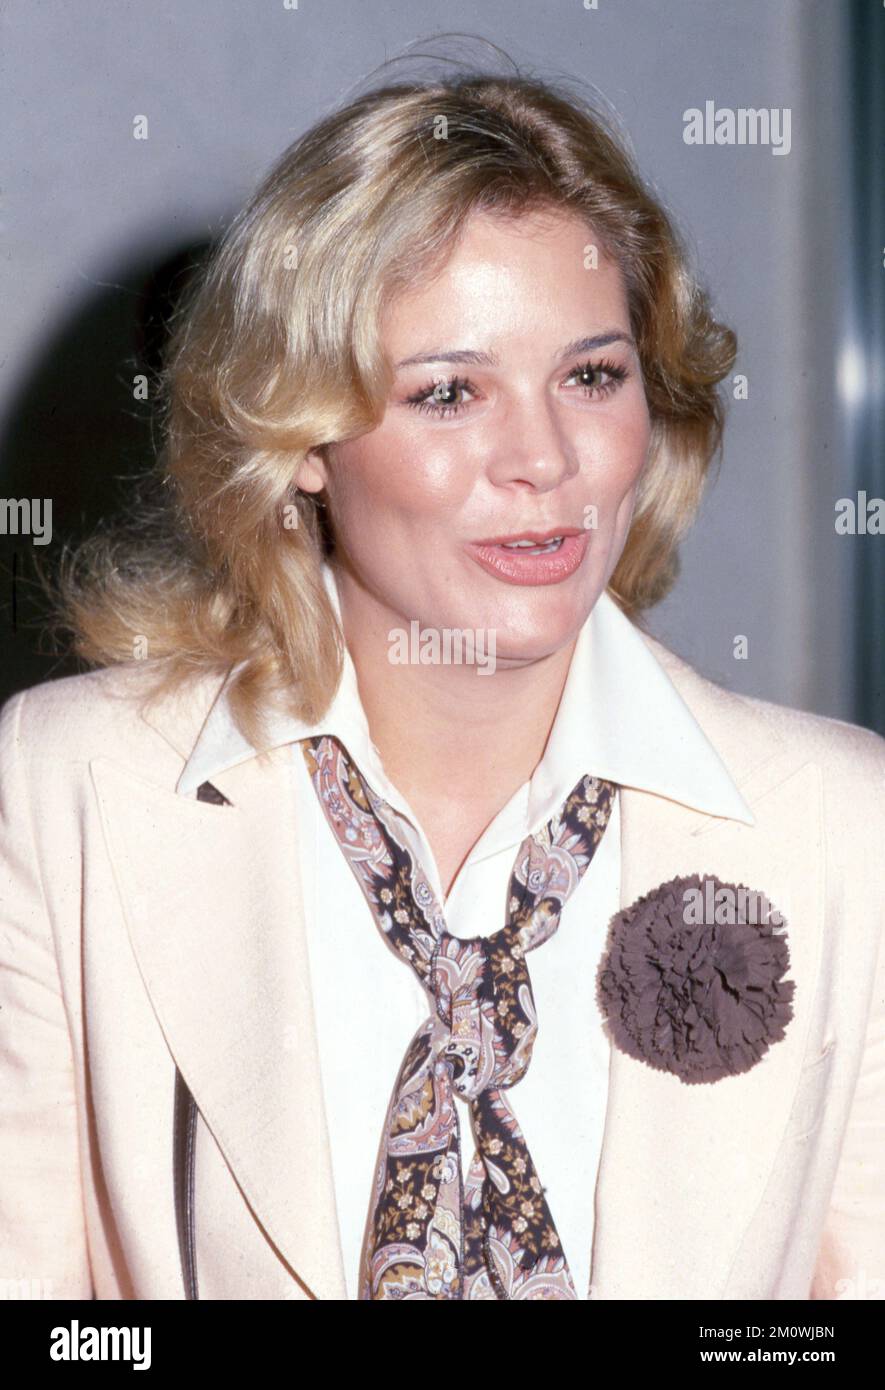 Melinda Naud aus den 70er Jahren Kredit: Ralph Dominguez/MediaPunch Stockfoto